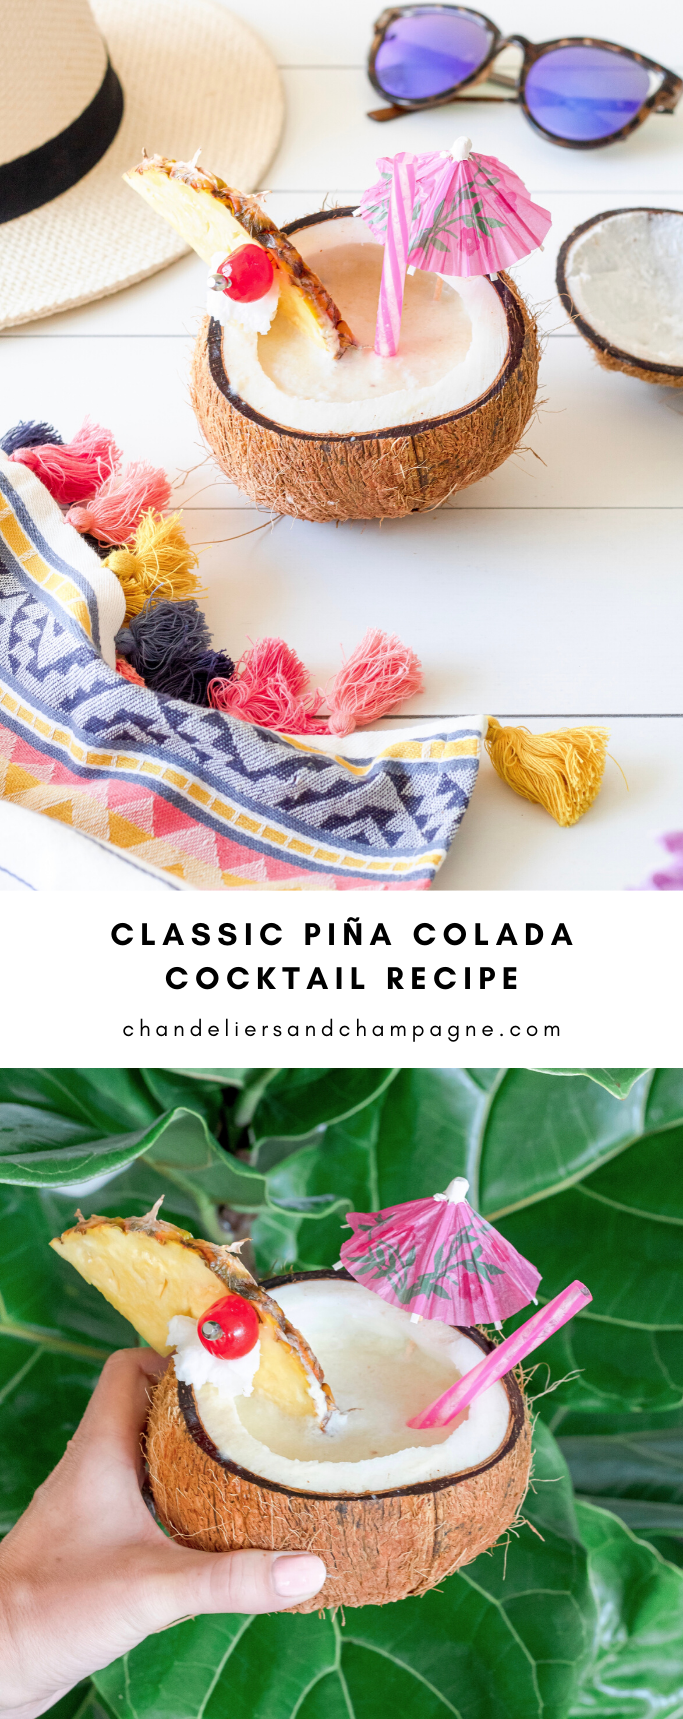 Classic Piña Colada recipe